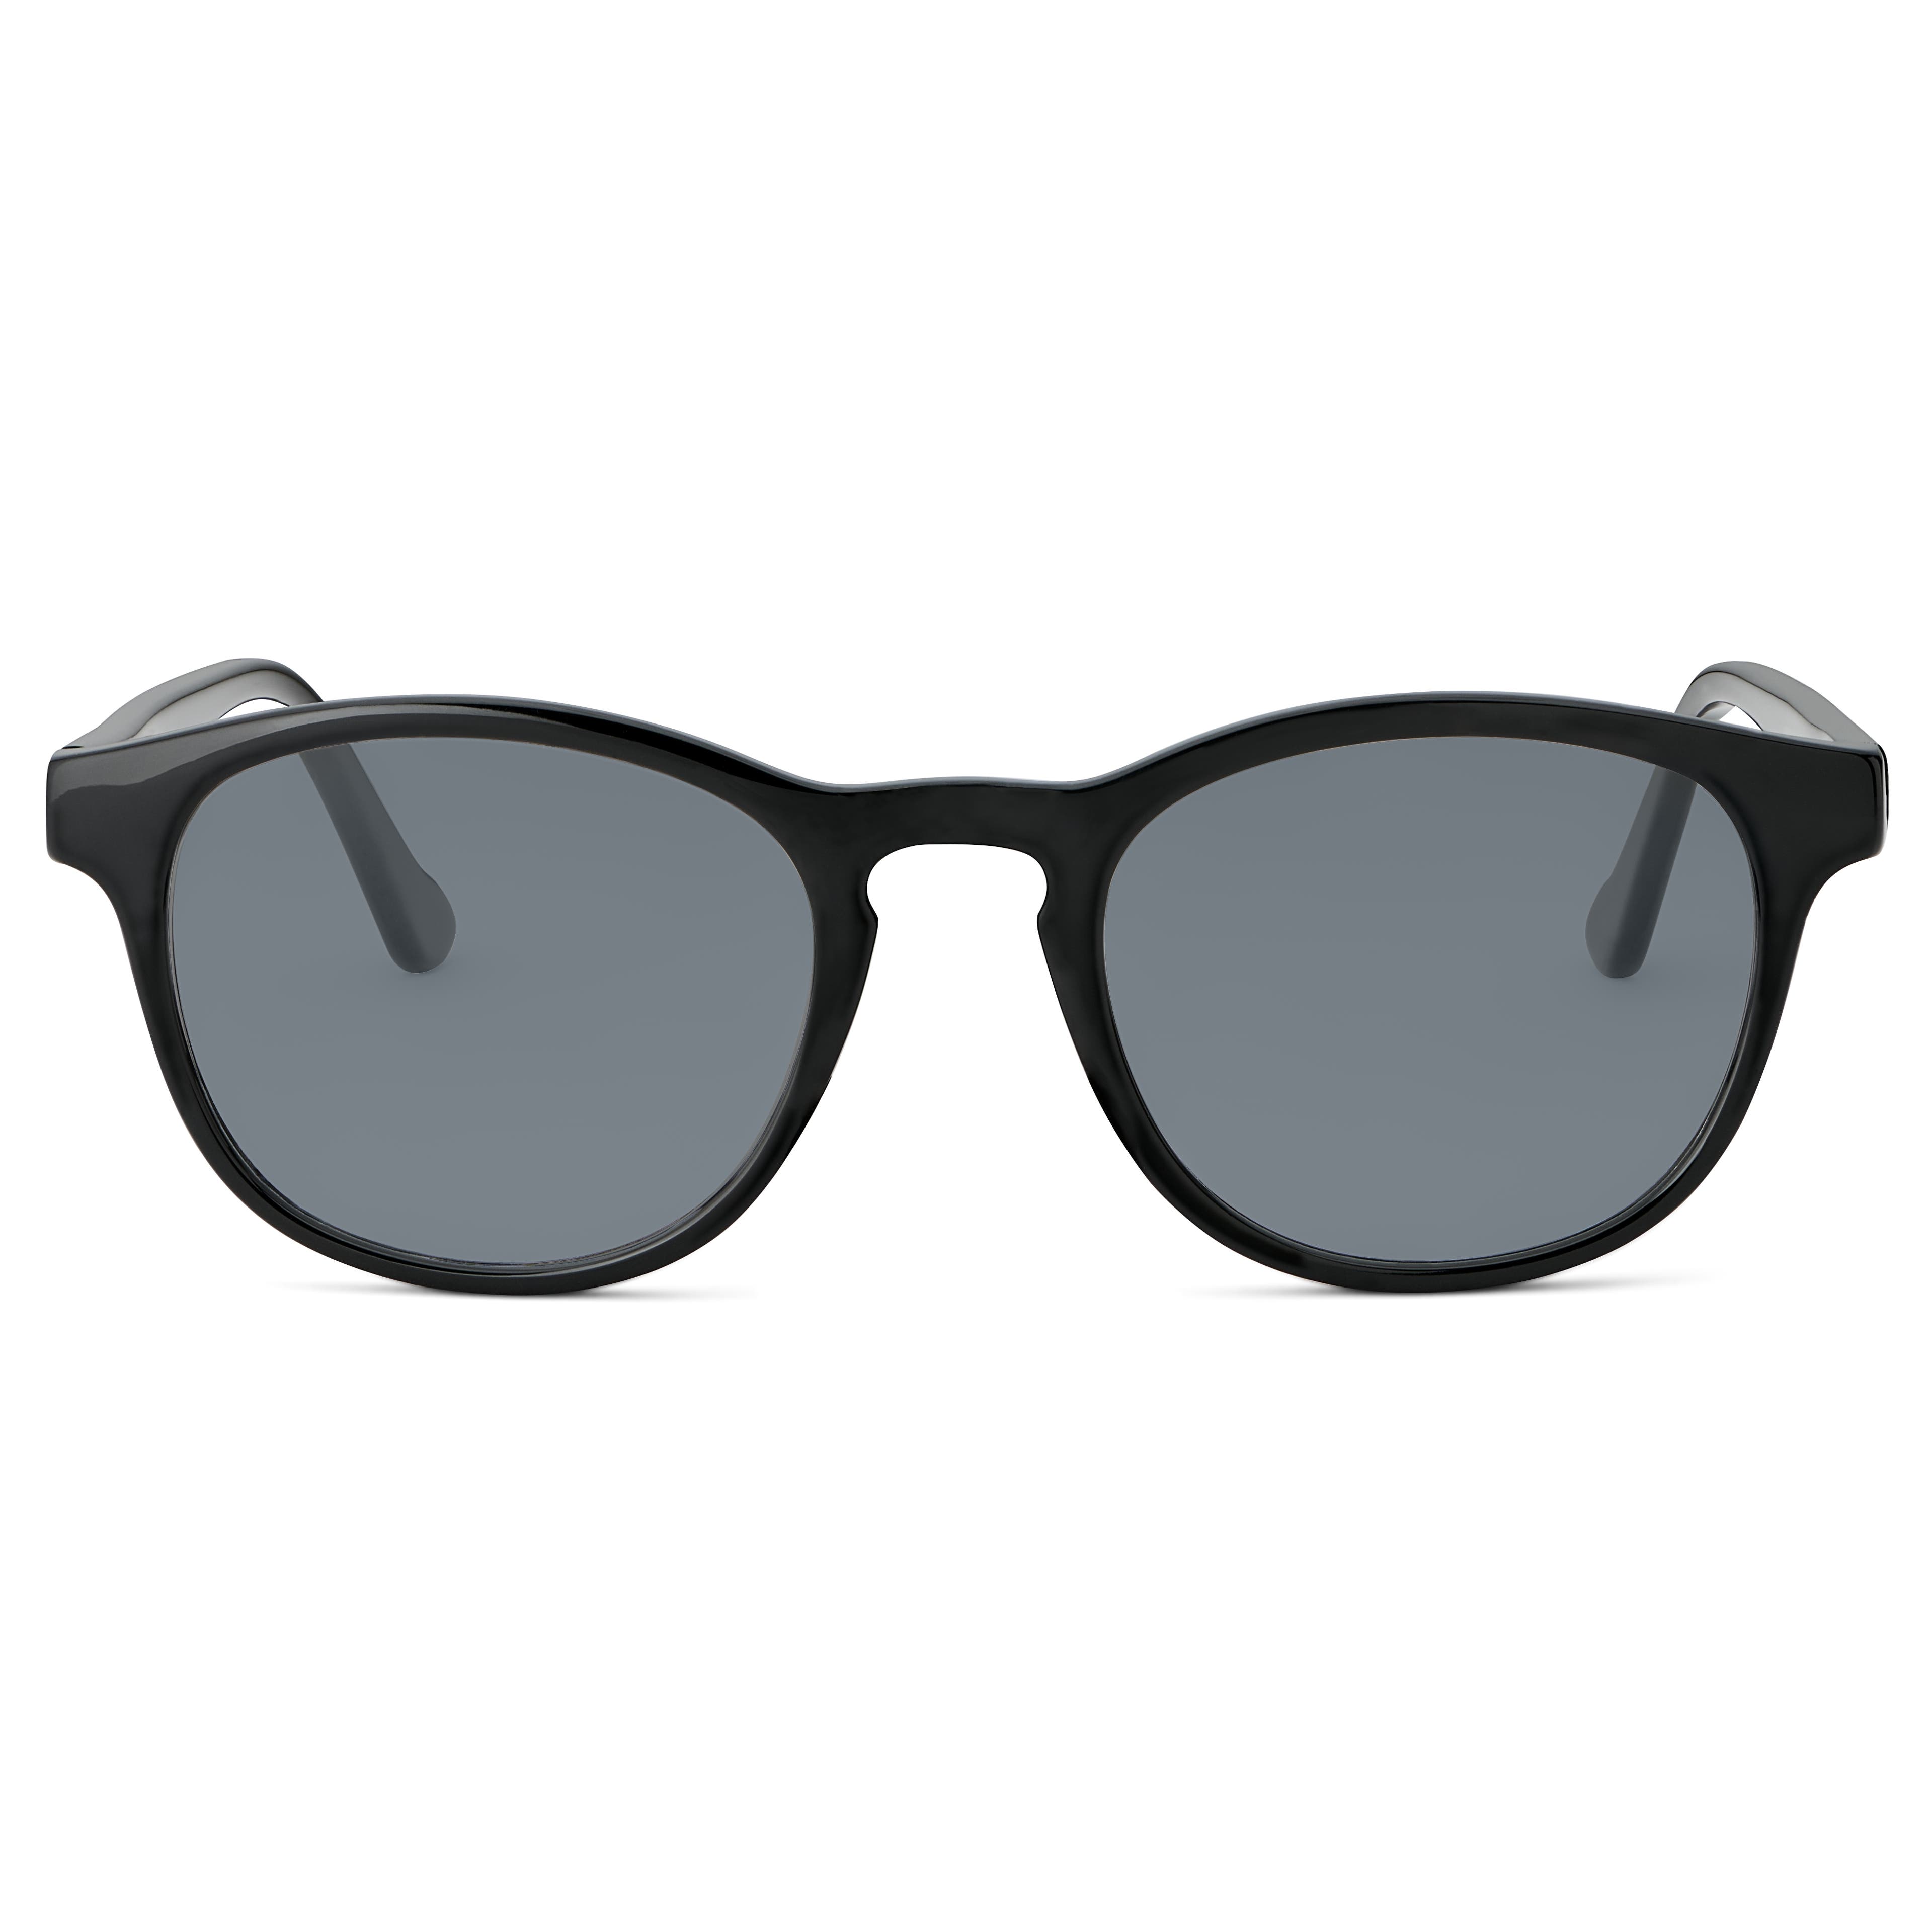  Klassische schwarze polarisierte Smokey-Sonnenbrille